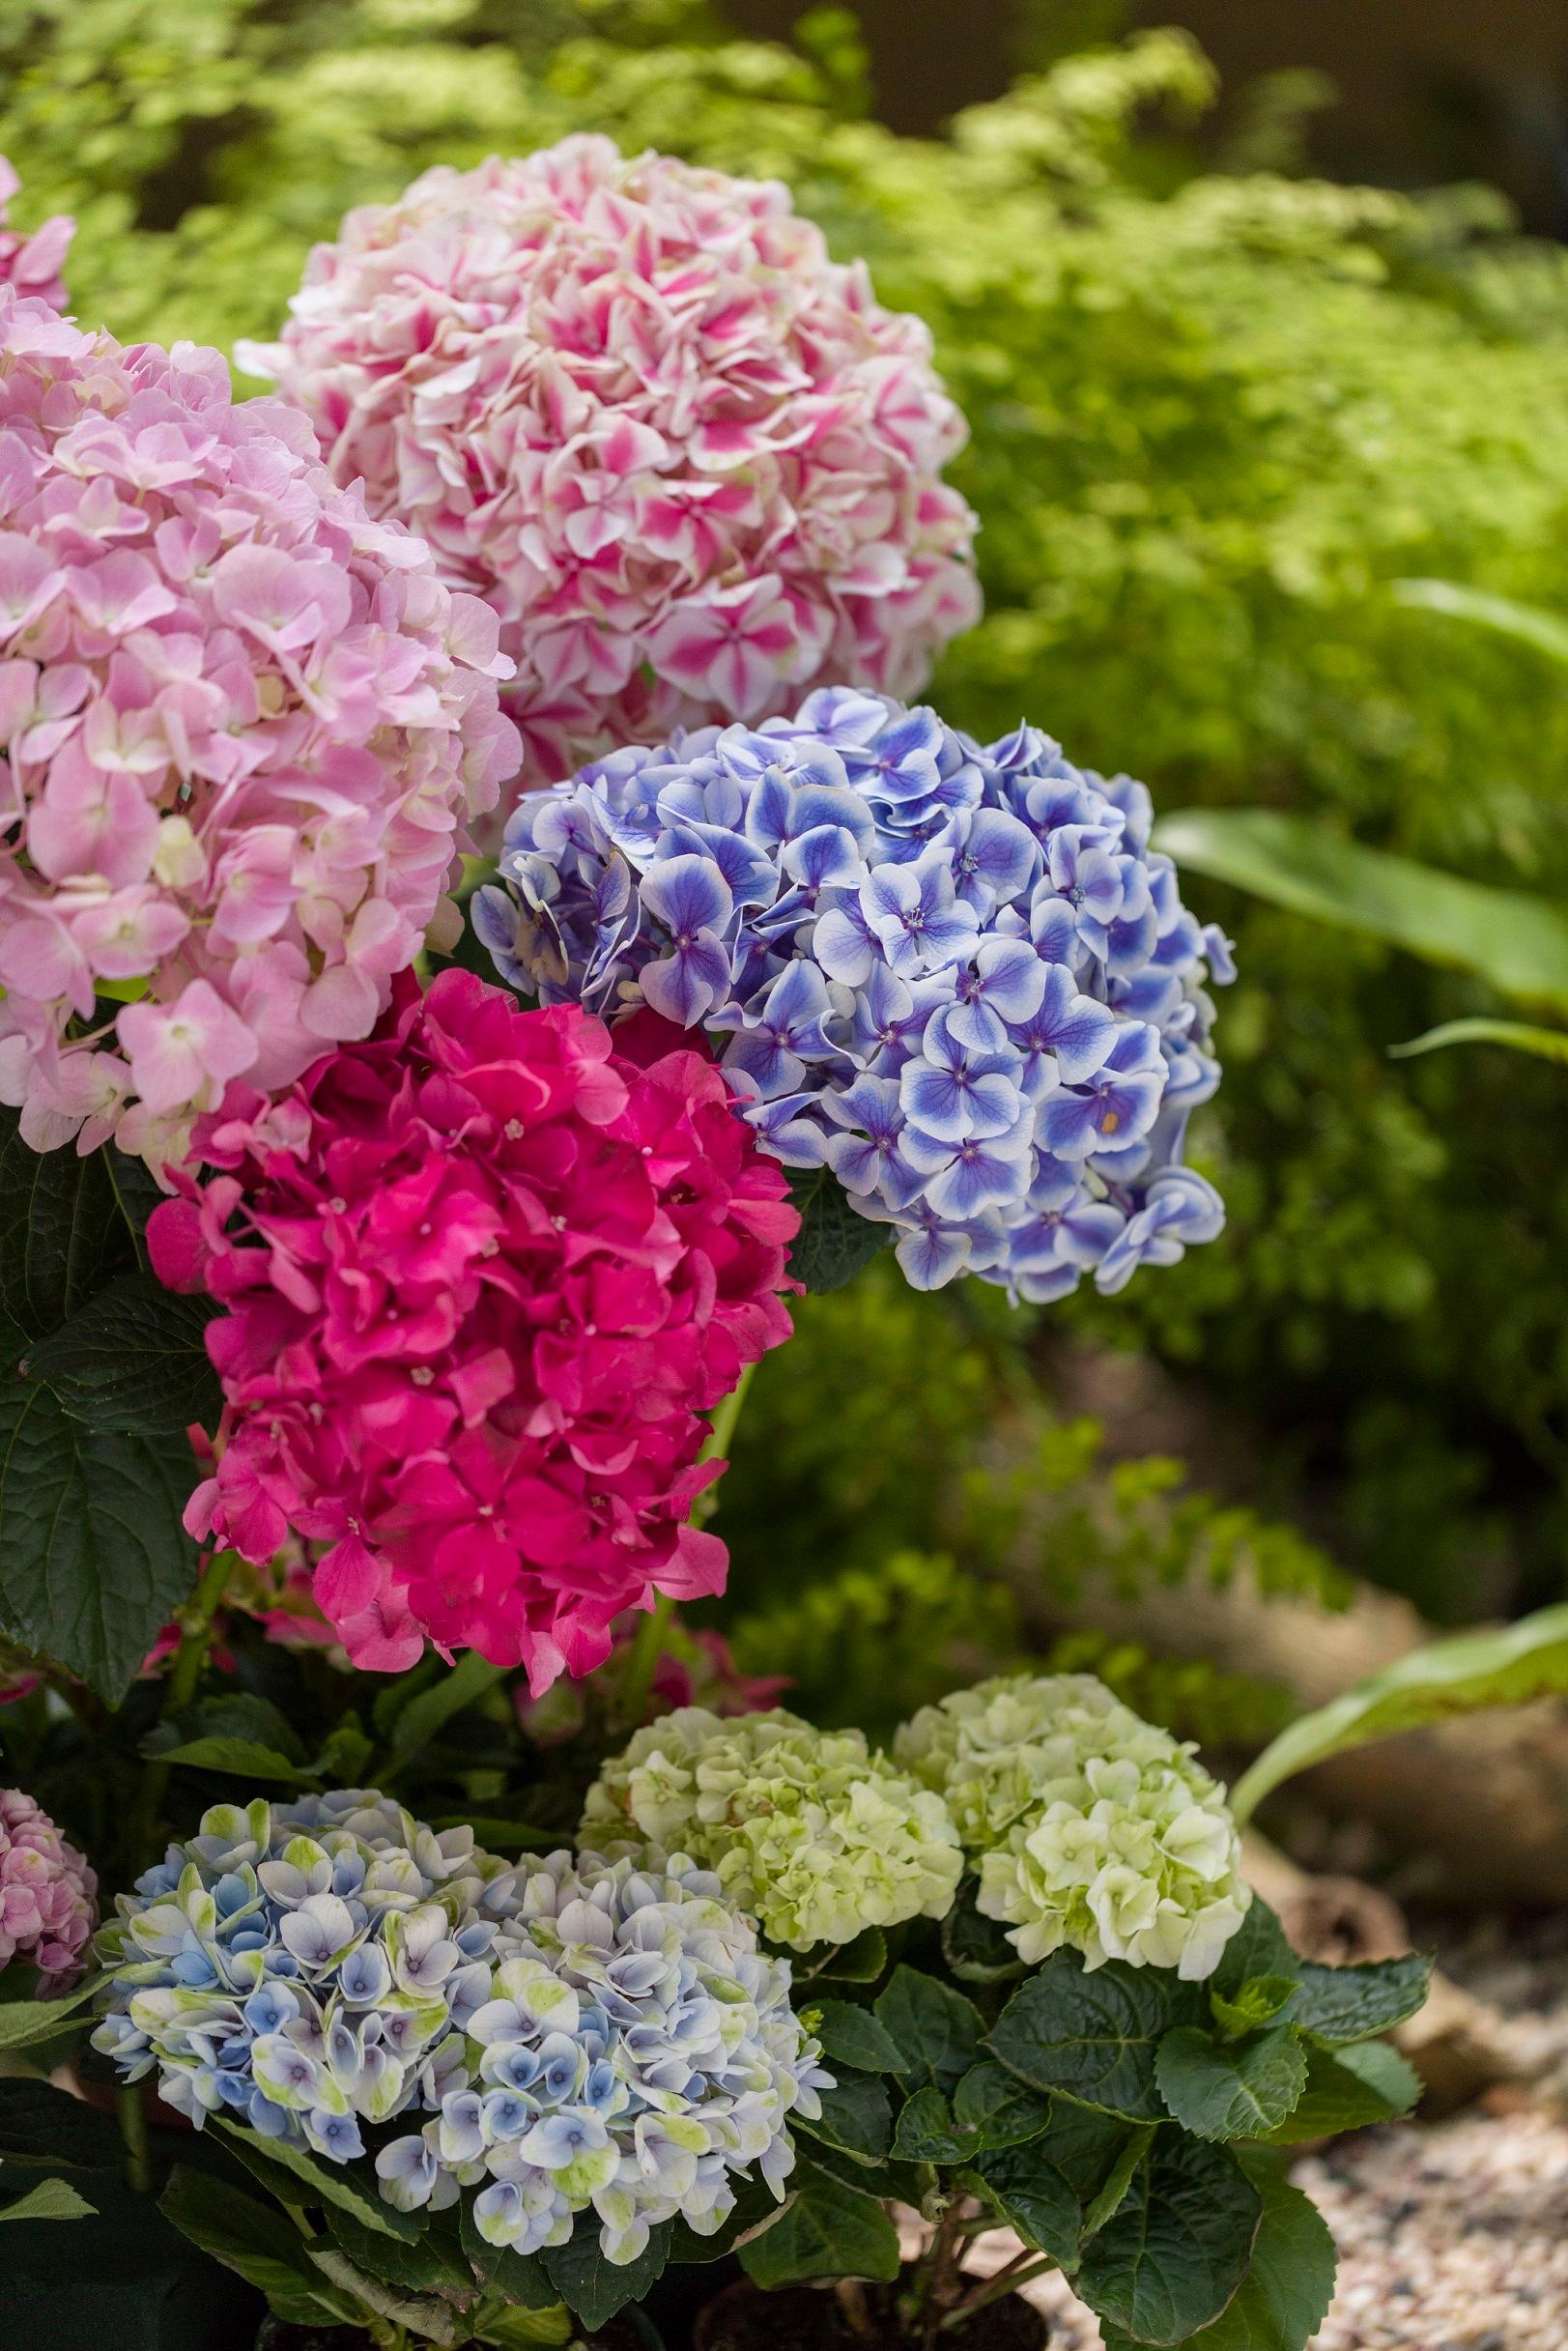 香港花卉展覽三月十日至十九日在維多利亞公園舉行，以花形嬌美獨特的繡球花為主題花。常見的繡球花有紫色、藍色、粉紅色、紫紅色、白色及青色。